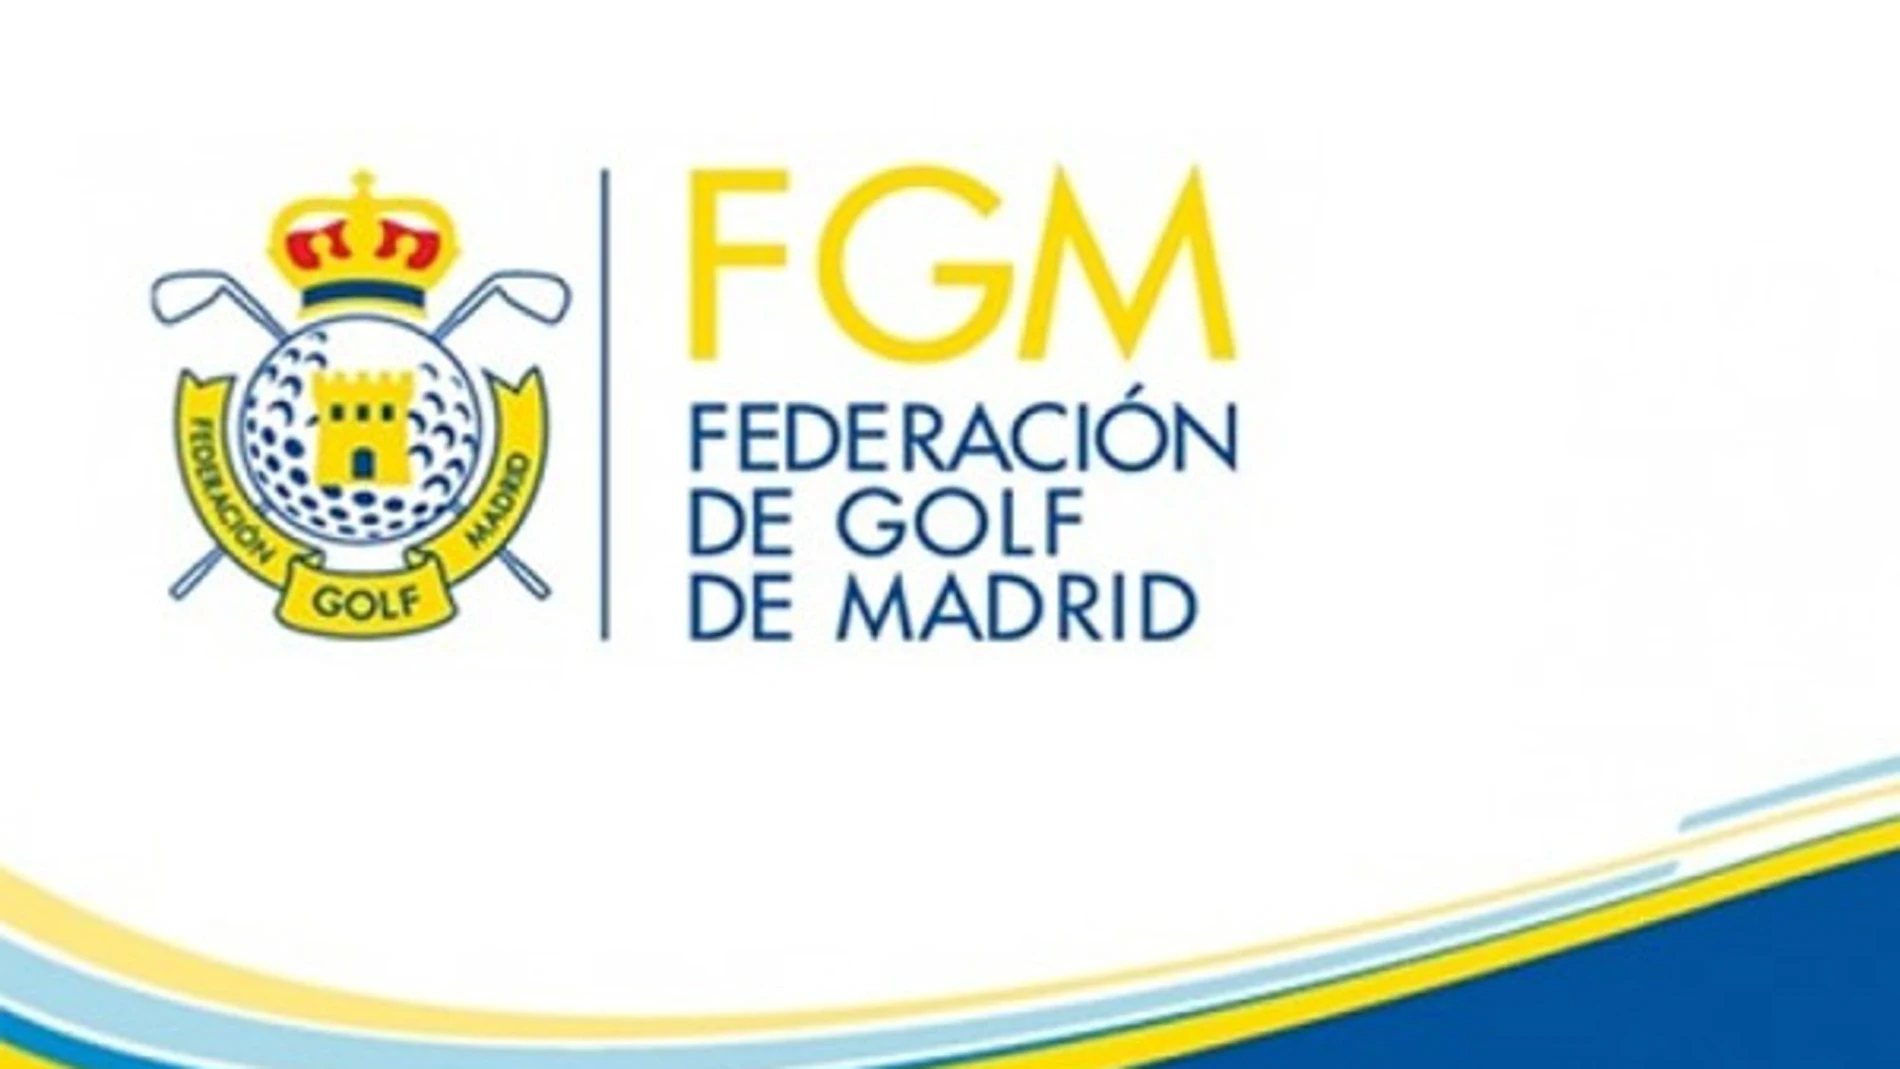 Federación de Golf de Madrid